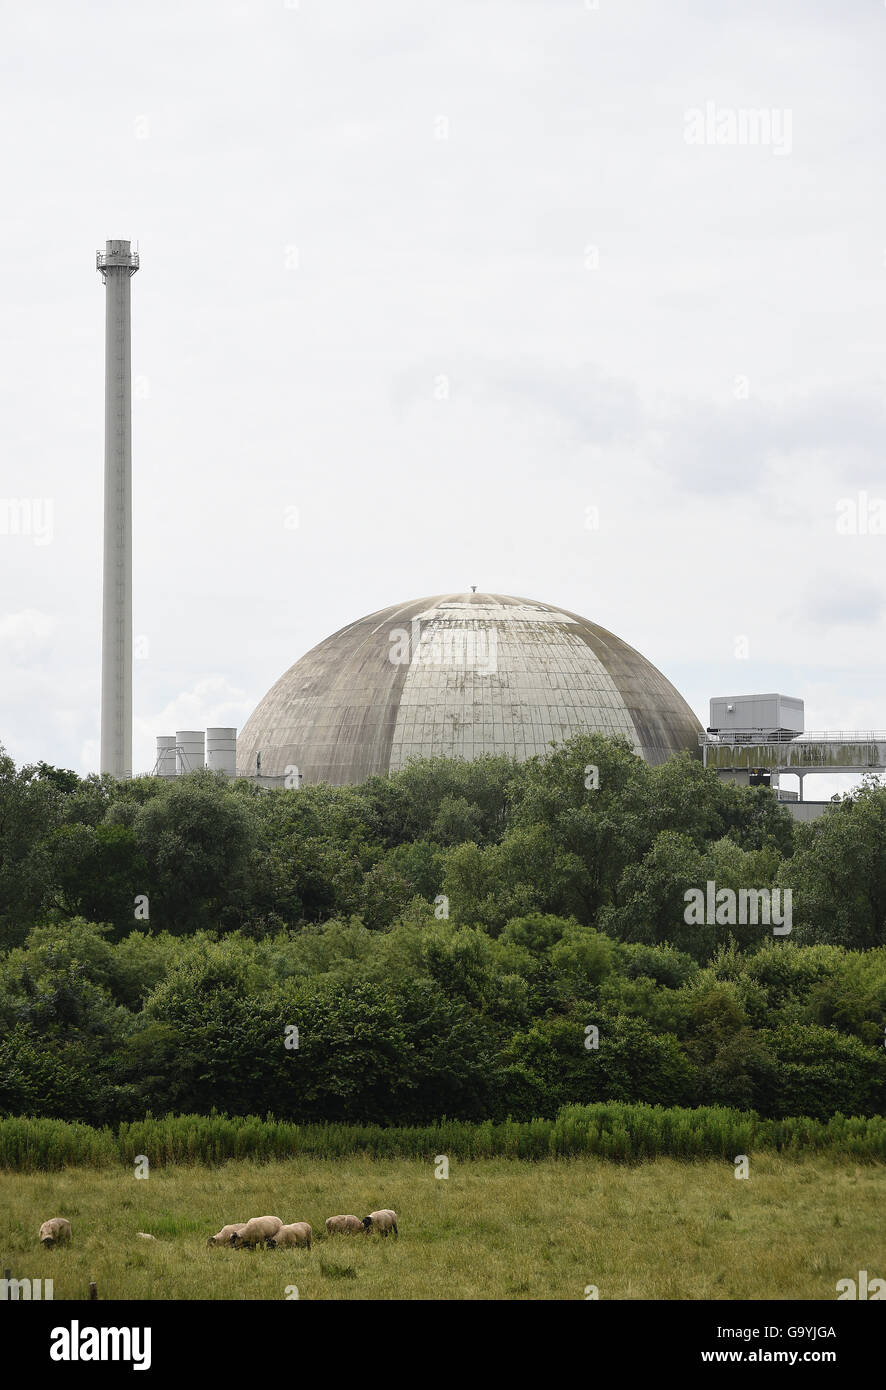 Esensham, Allemagne. 4 juillet, 2016. La centrale nucléaire de Unterweser entouré d'arbres, près de l'Esensham, Allemagne, 4 juillet 2016. Aeon est exigeant des dommages-intérêts en raison de la fermeture temporaire de l'Isar et Unterweser 1 centrales nucléaires commandées par les états de Bavière et de Basse-Saxe en mars 2011. Le verdict devrait être annoncé au tribunal régional de Hanovre le 4 juillet 2016. PHOTO : CARMEN JASPERSEN/DPA/Alamy Live News Banque D'Images